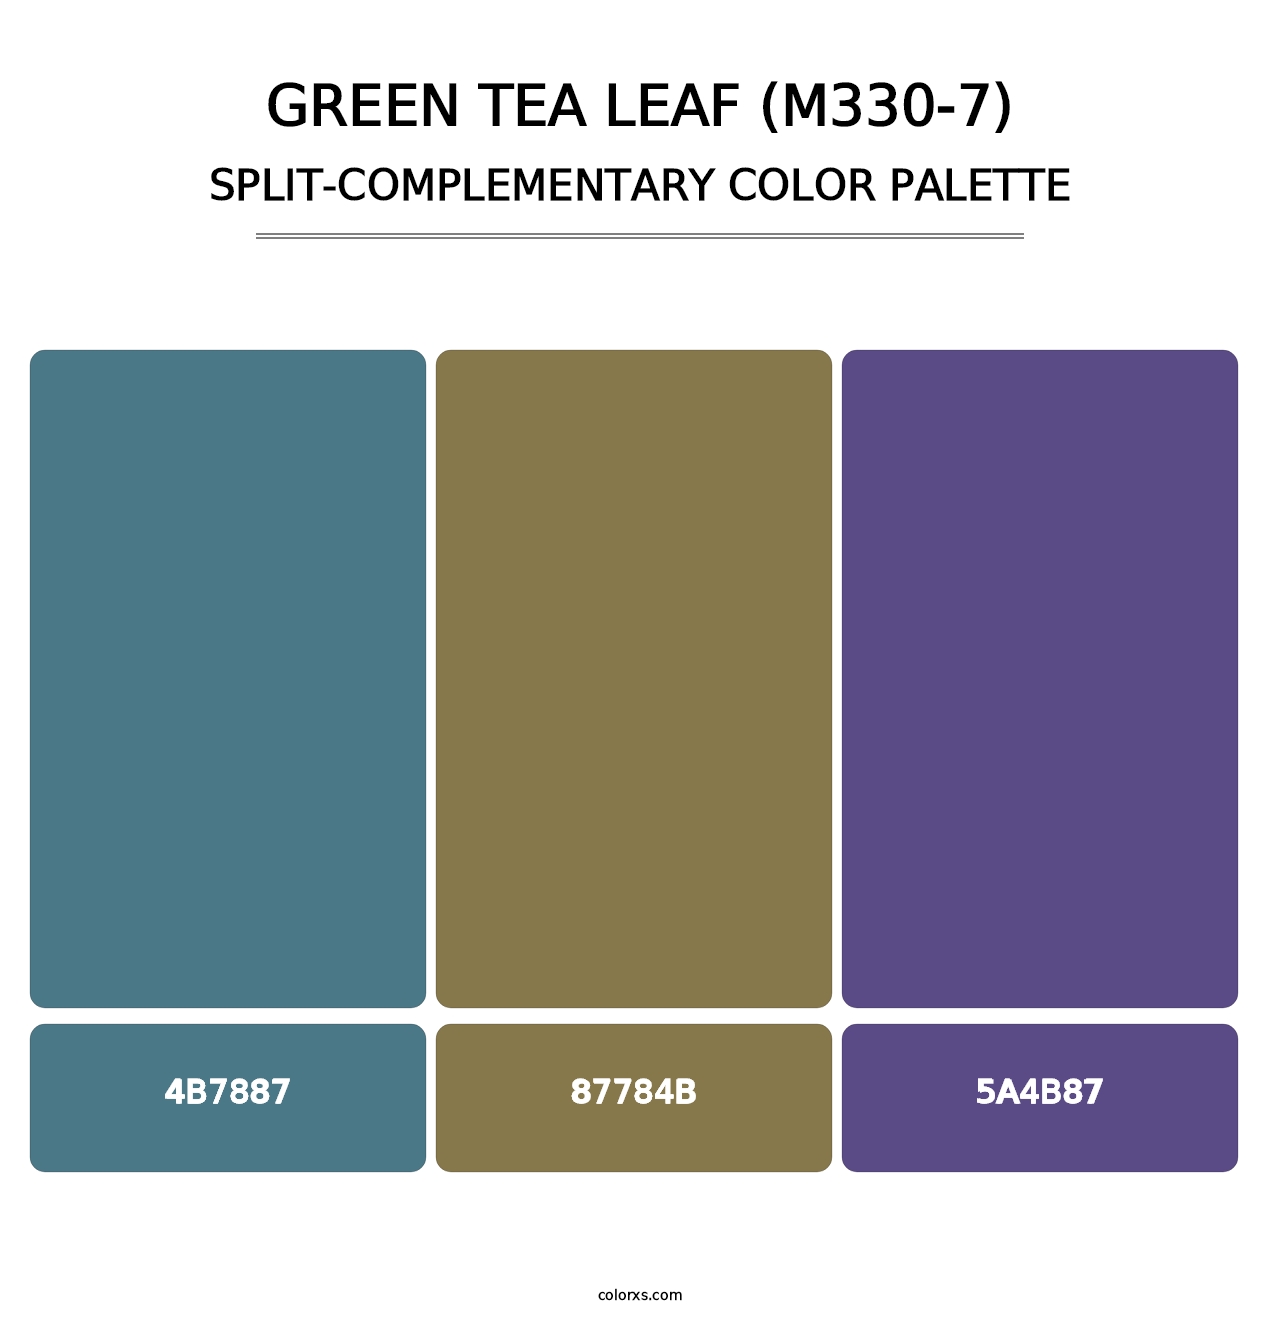 Green Tea Leaf (M330-7) - Split-Complementary Color Palette